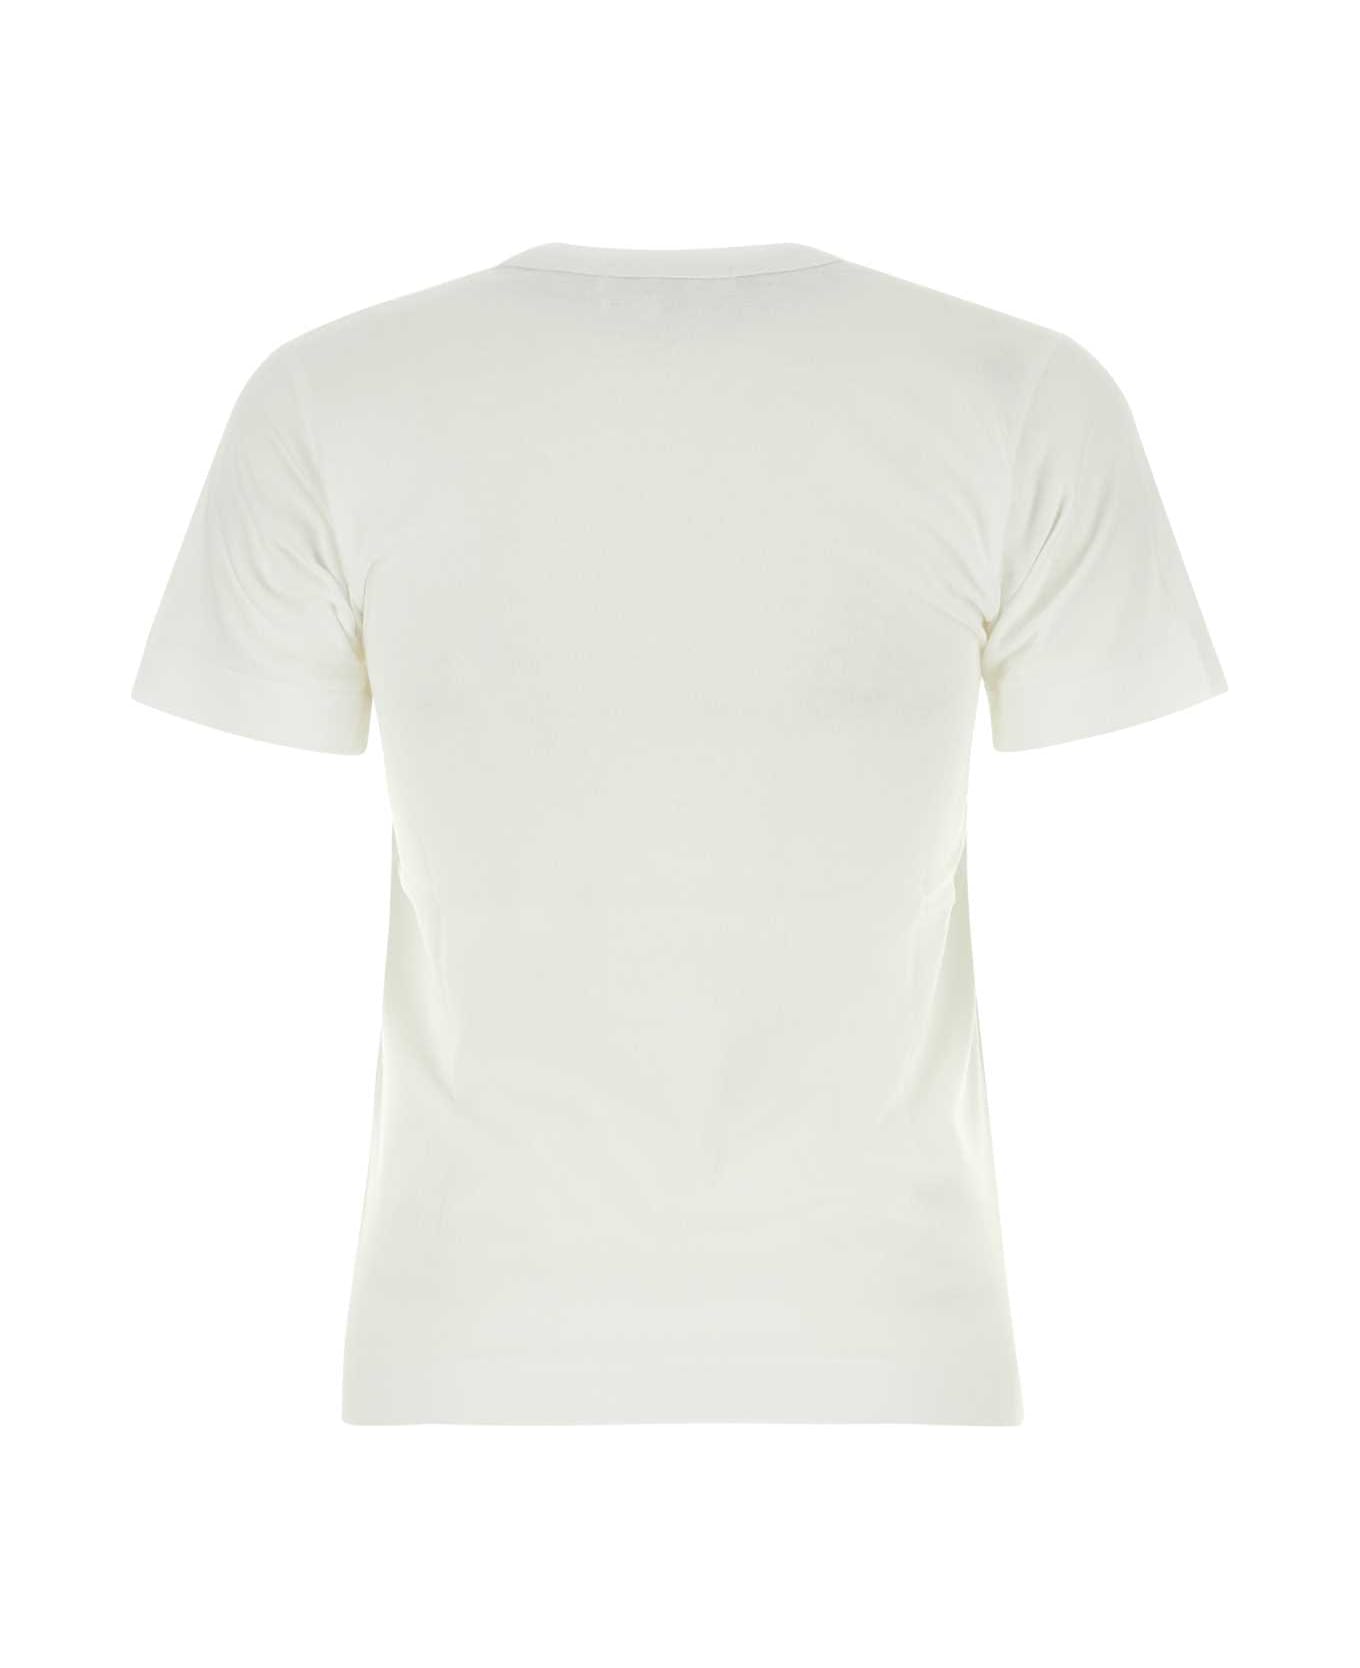 Comme des Garçons Play White Cotton T-shirt - WHTBLK